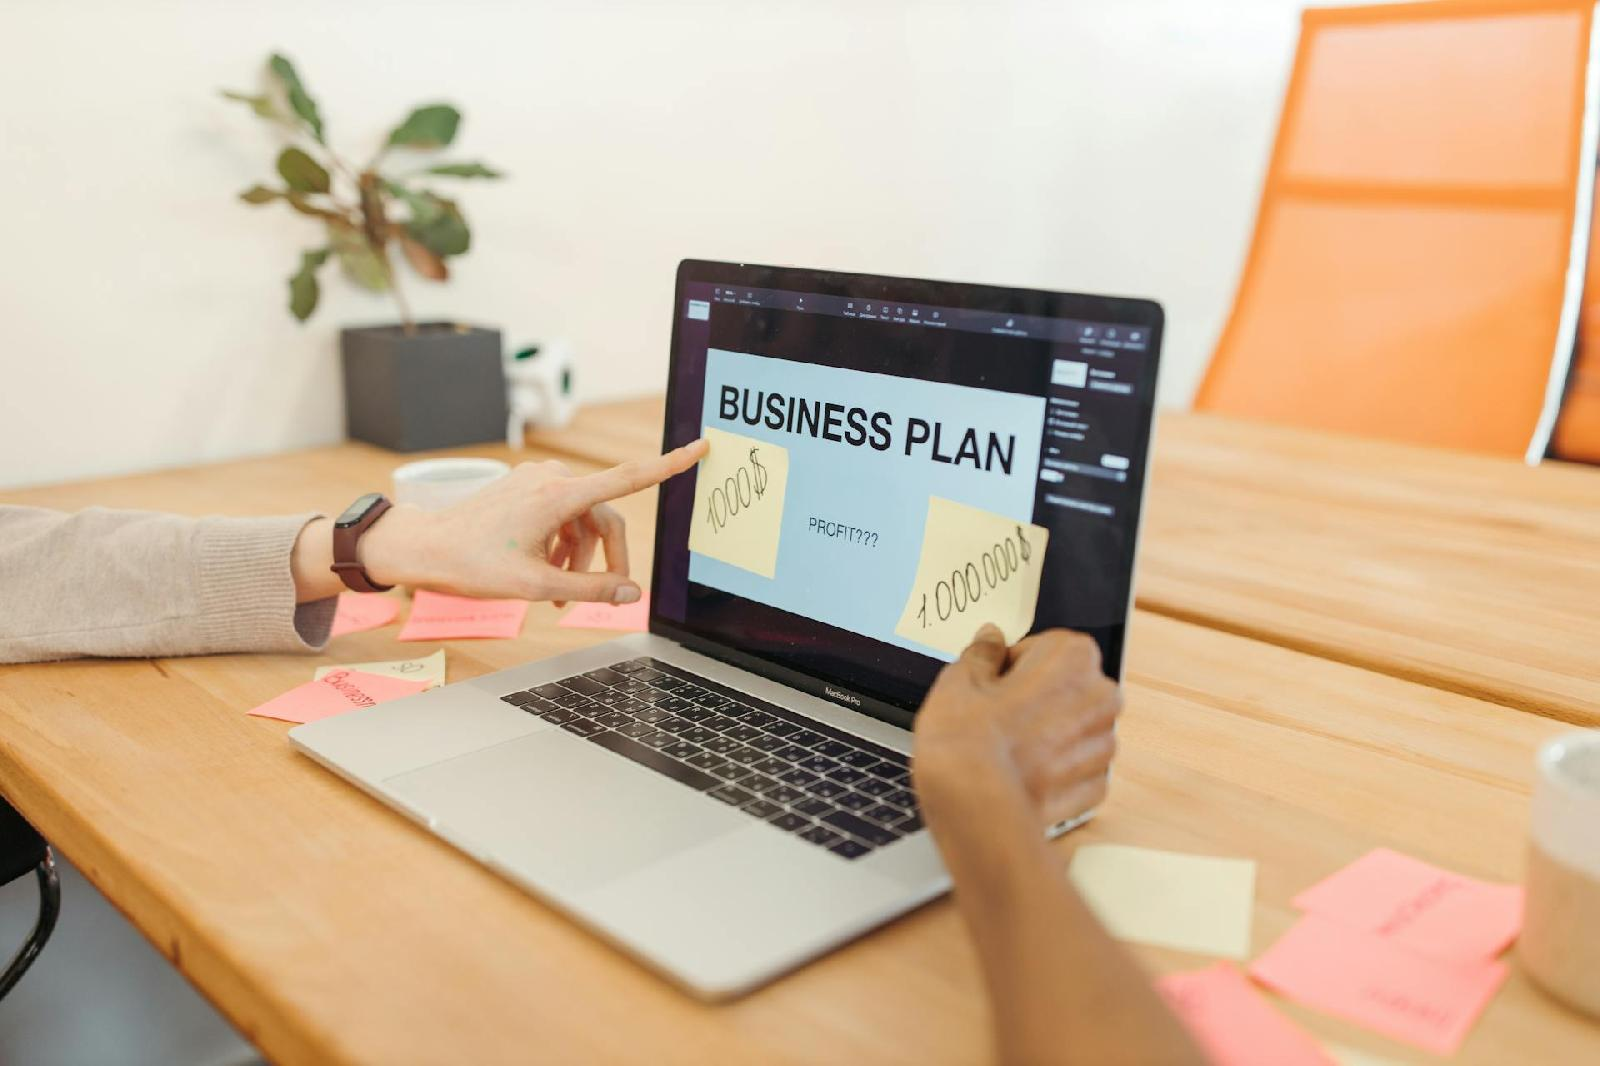 Le guide ultime pour creer un business plan efficace